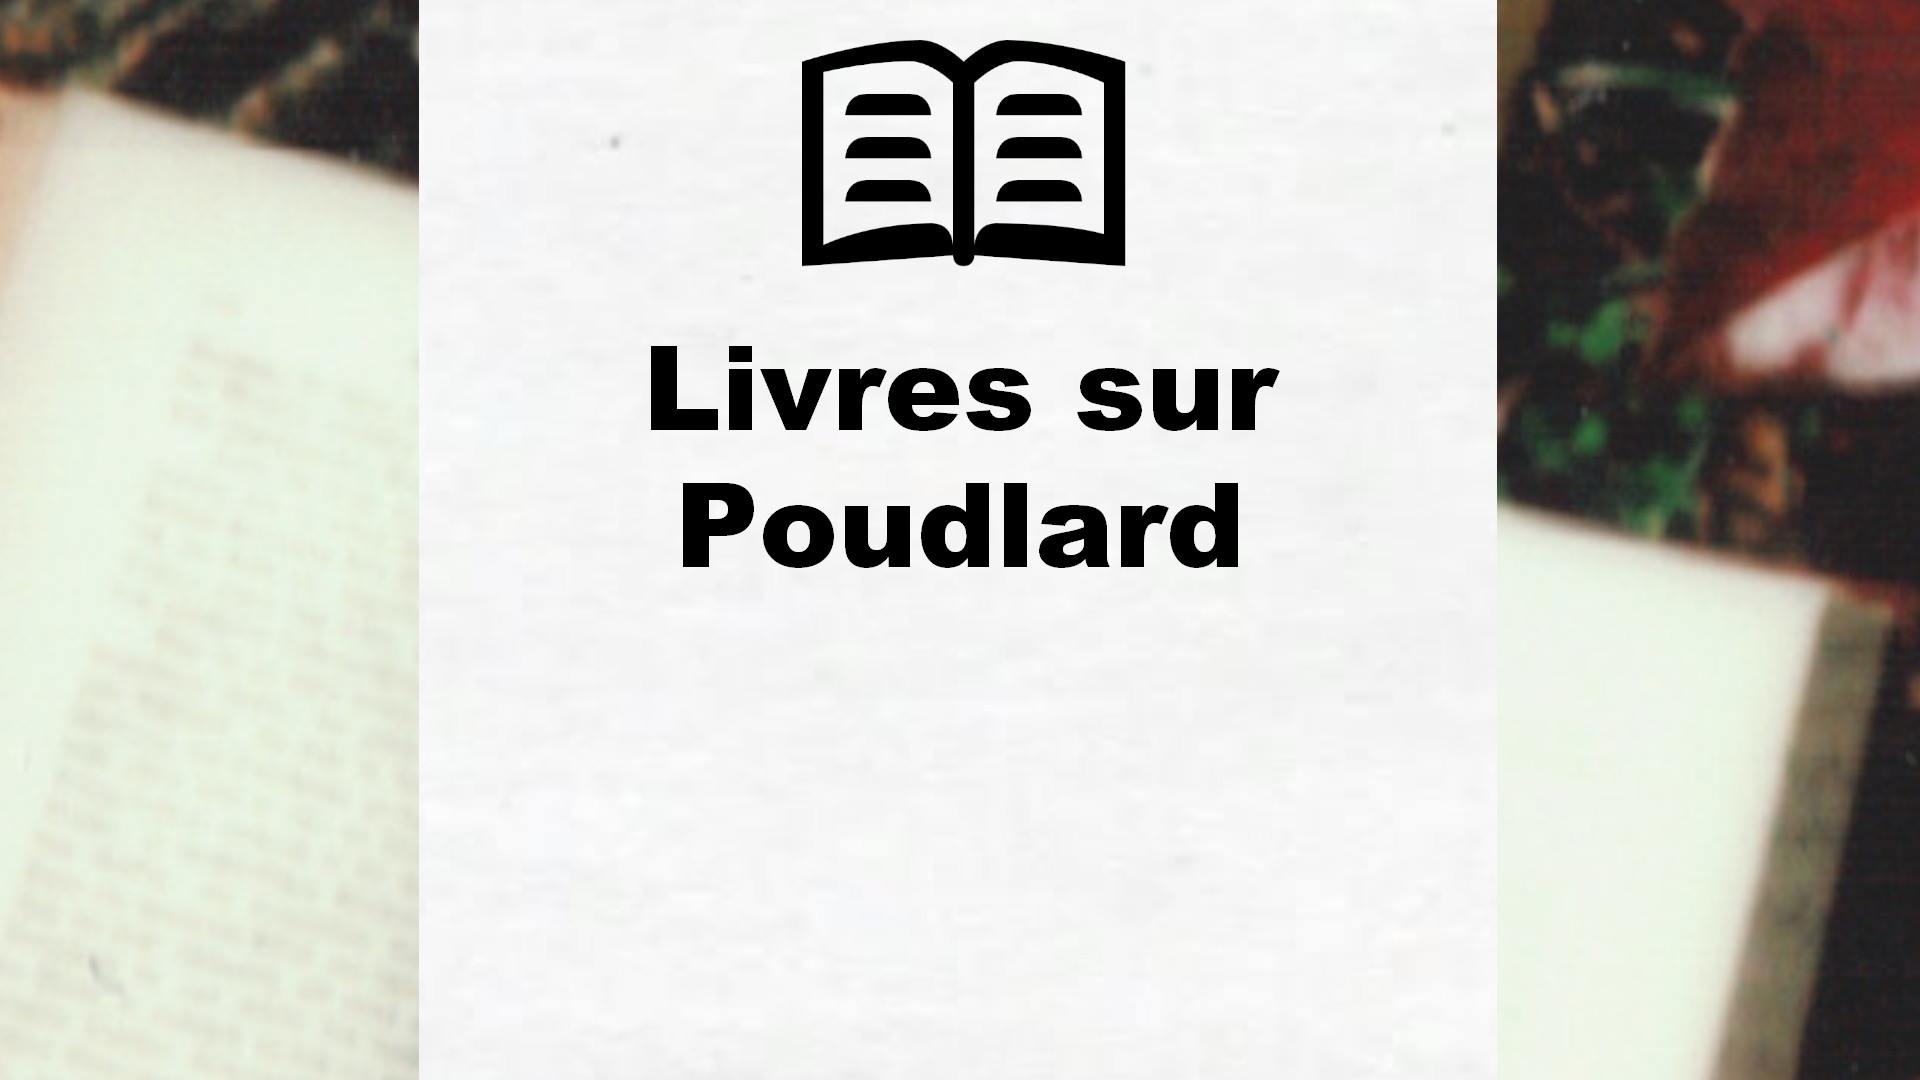 Livres sur Poudlard